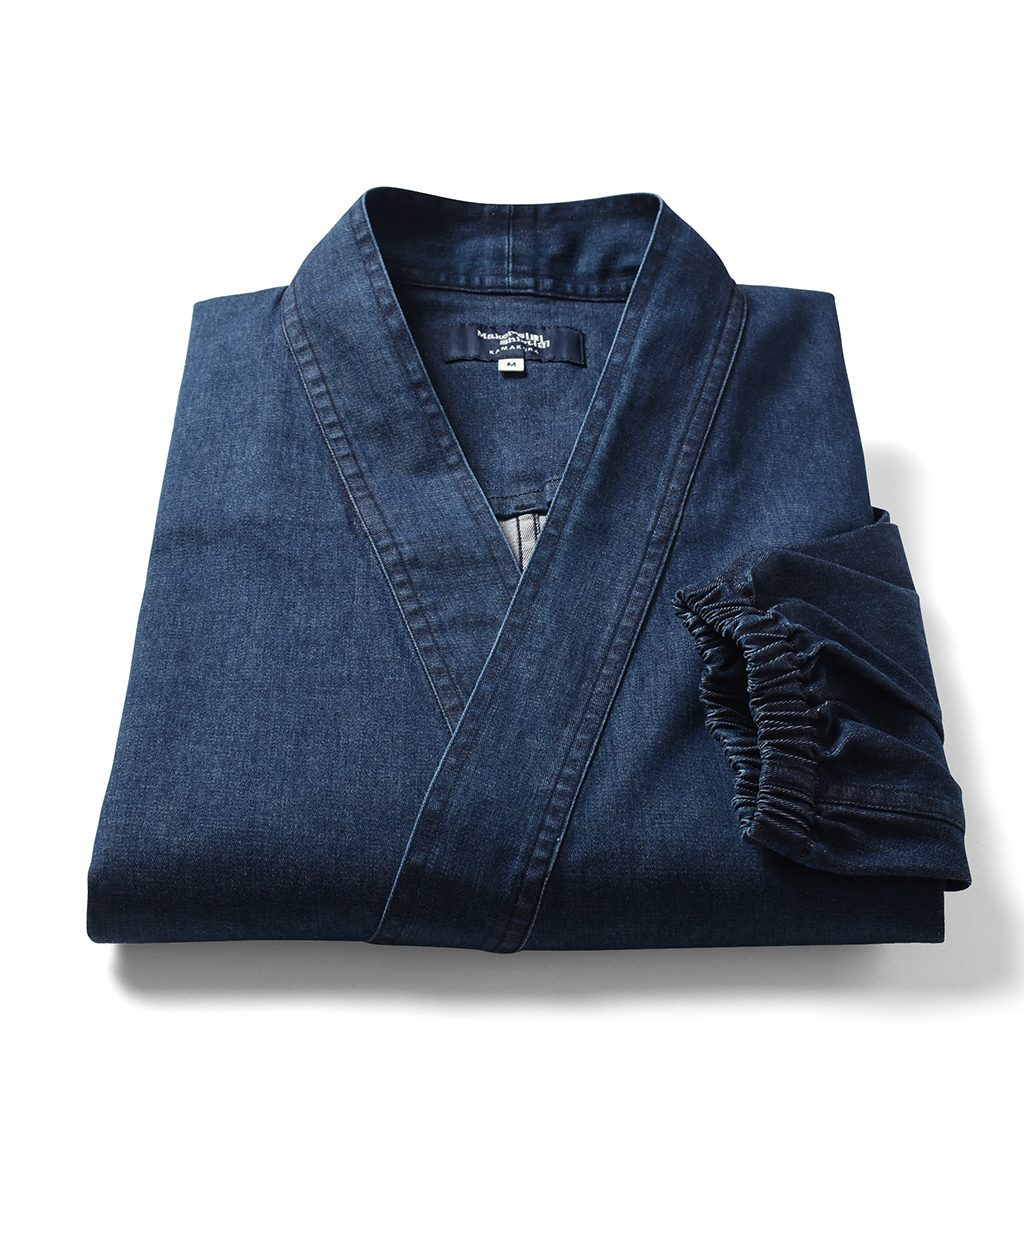 鎌倉シャツの作務衣、世界へ | メーカーズシャツ鎌倉 公式通販 | 日本 